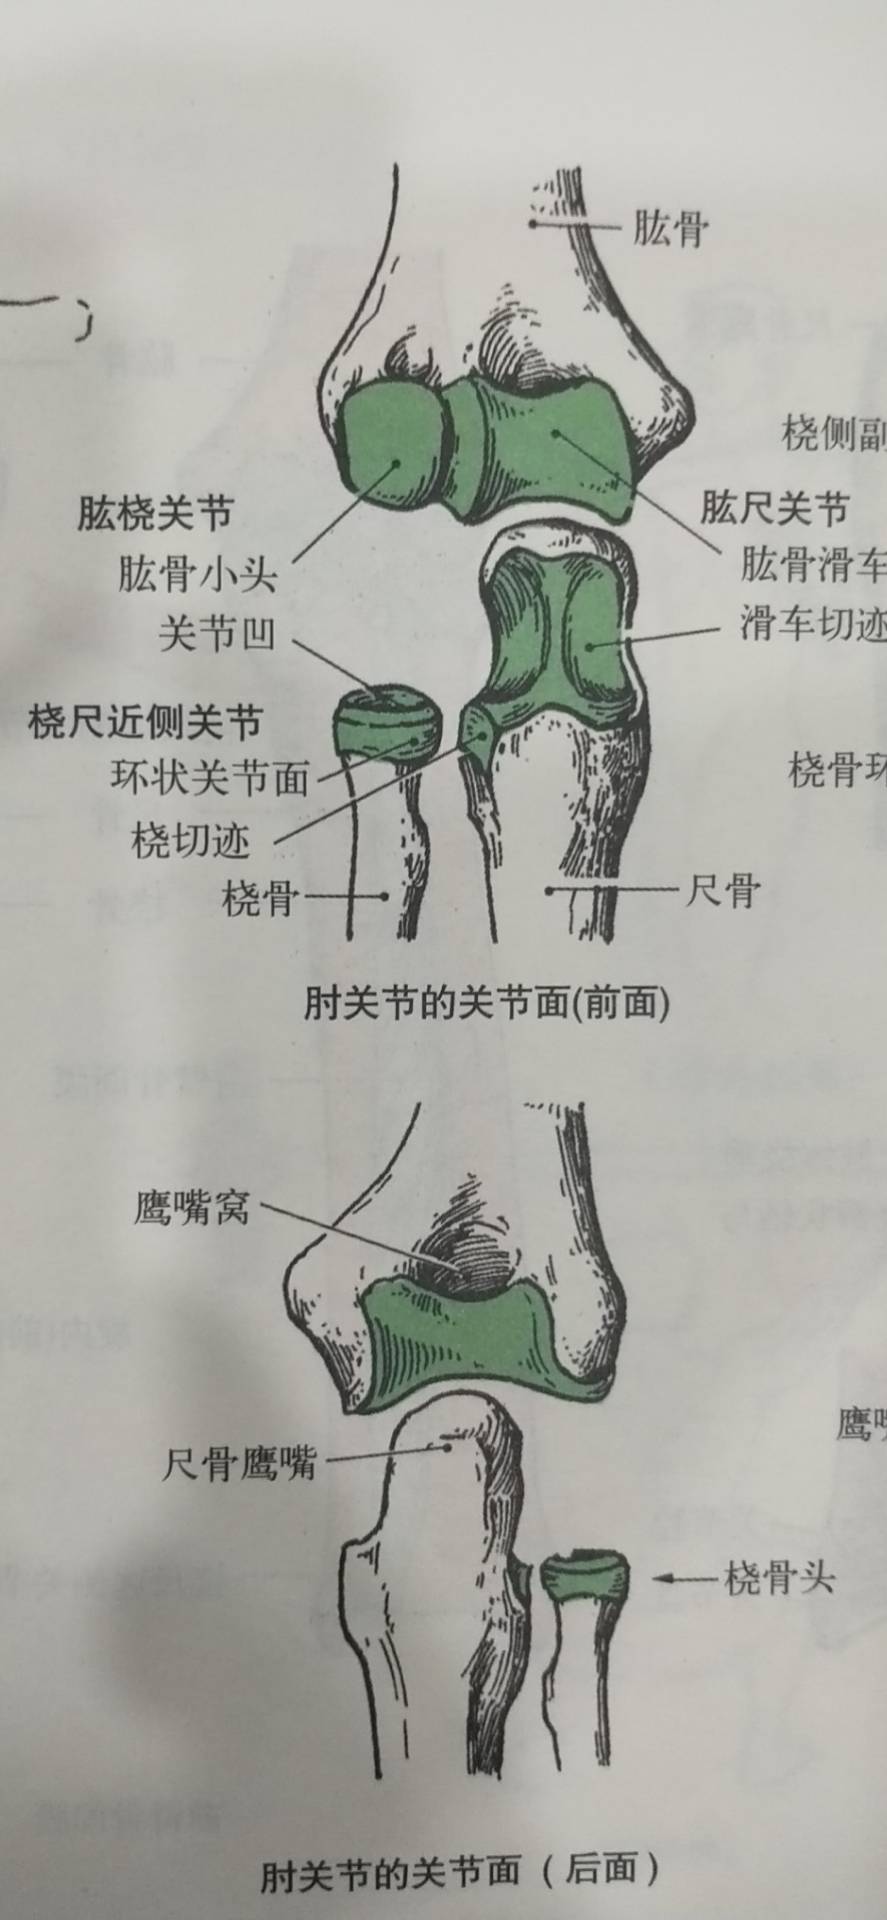 肱桡关节:由肱骨的"肱骨小头"与桡骨上端的关节凹构成,属于球窝关节